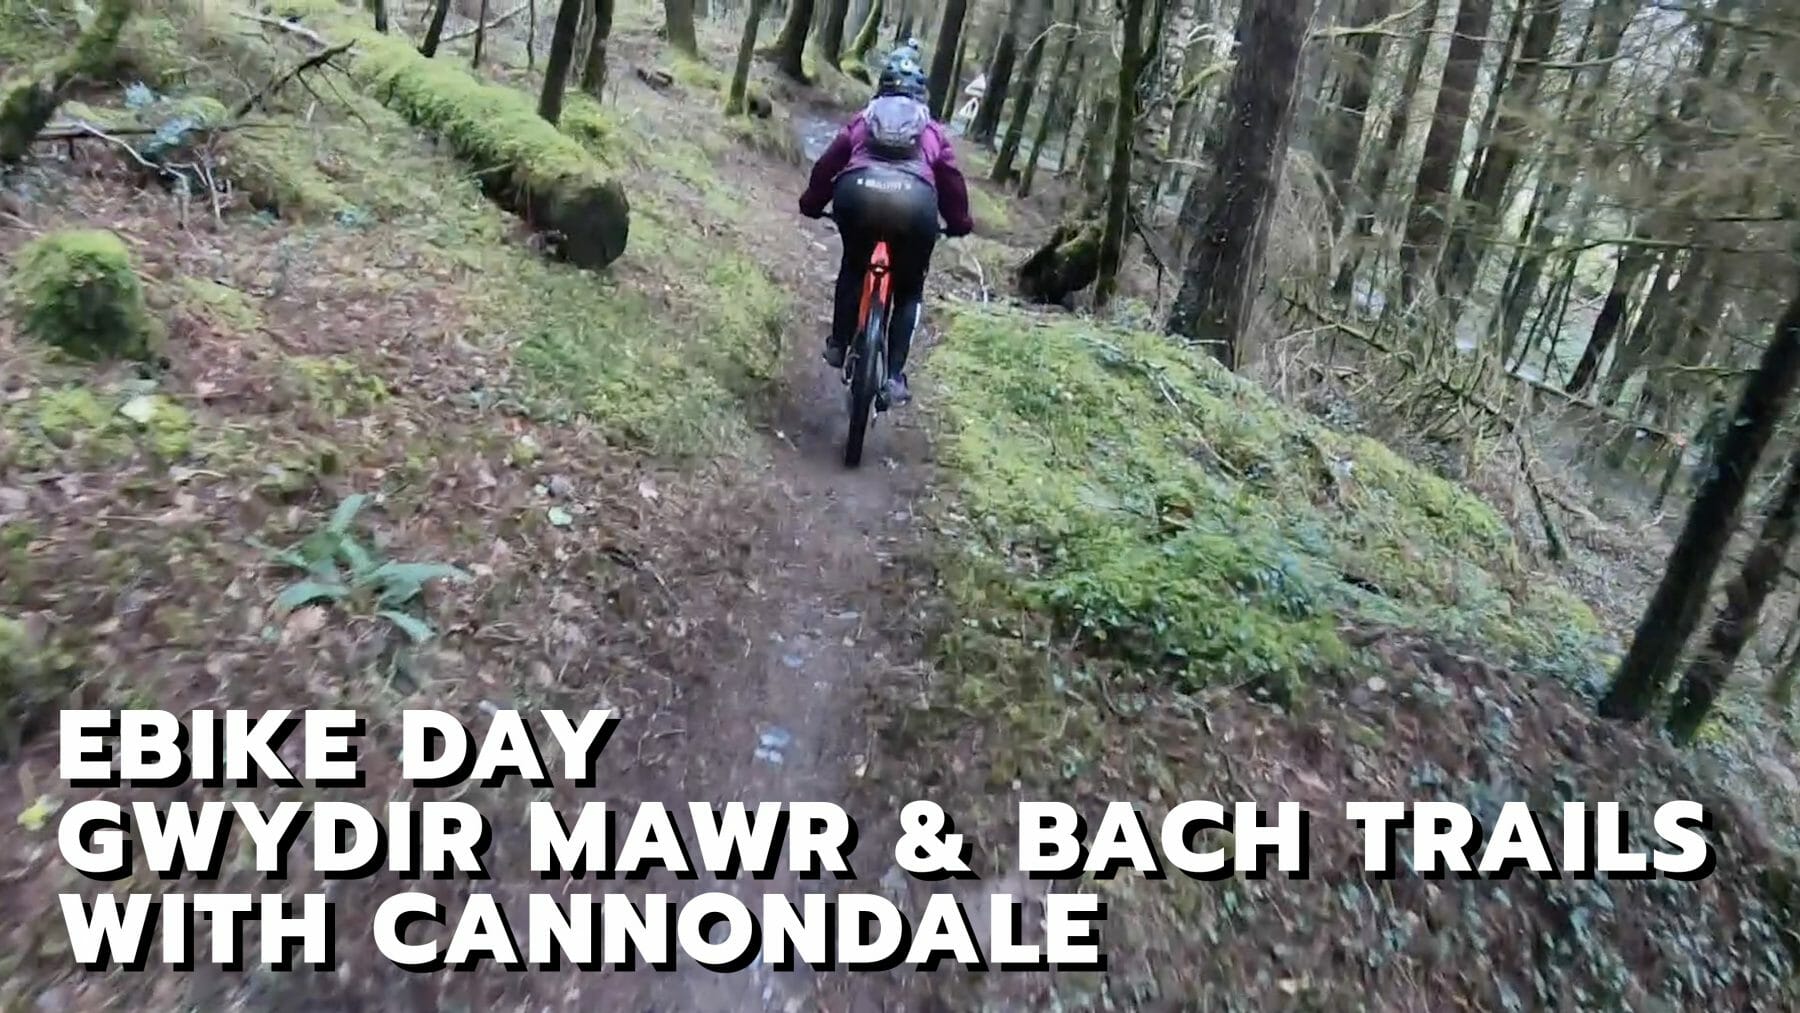 Ebiking Gwydir Mawr & Bach Trails (Formerly Marin Trail) with Cannondale